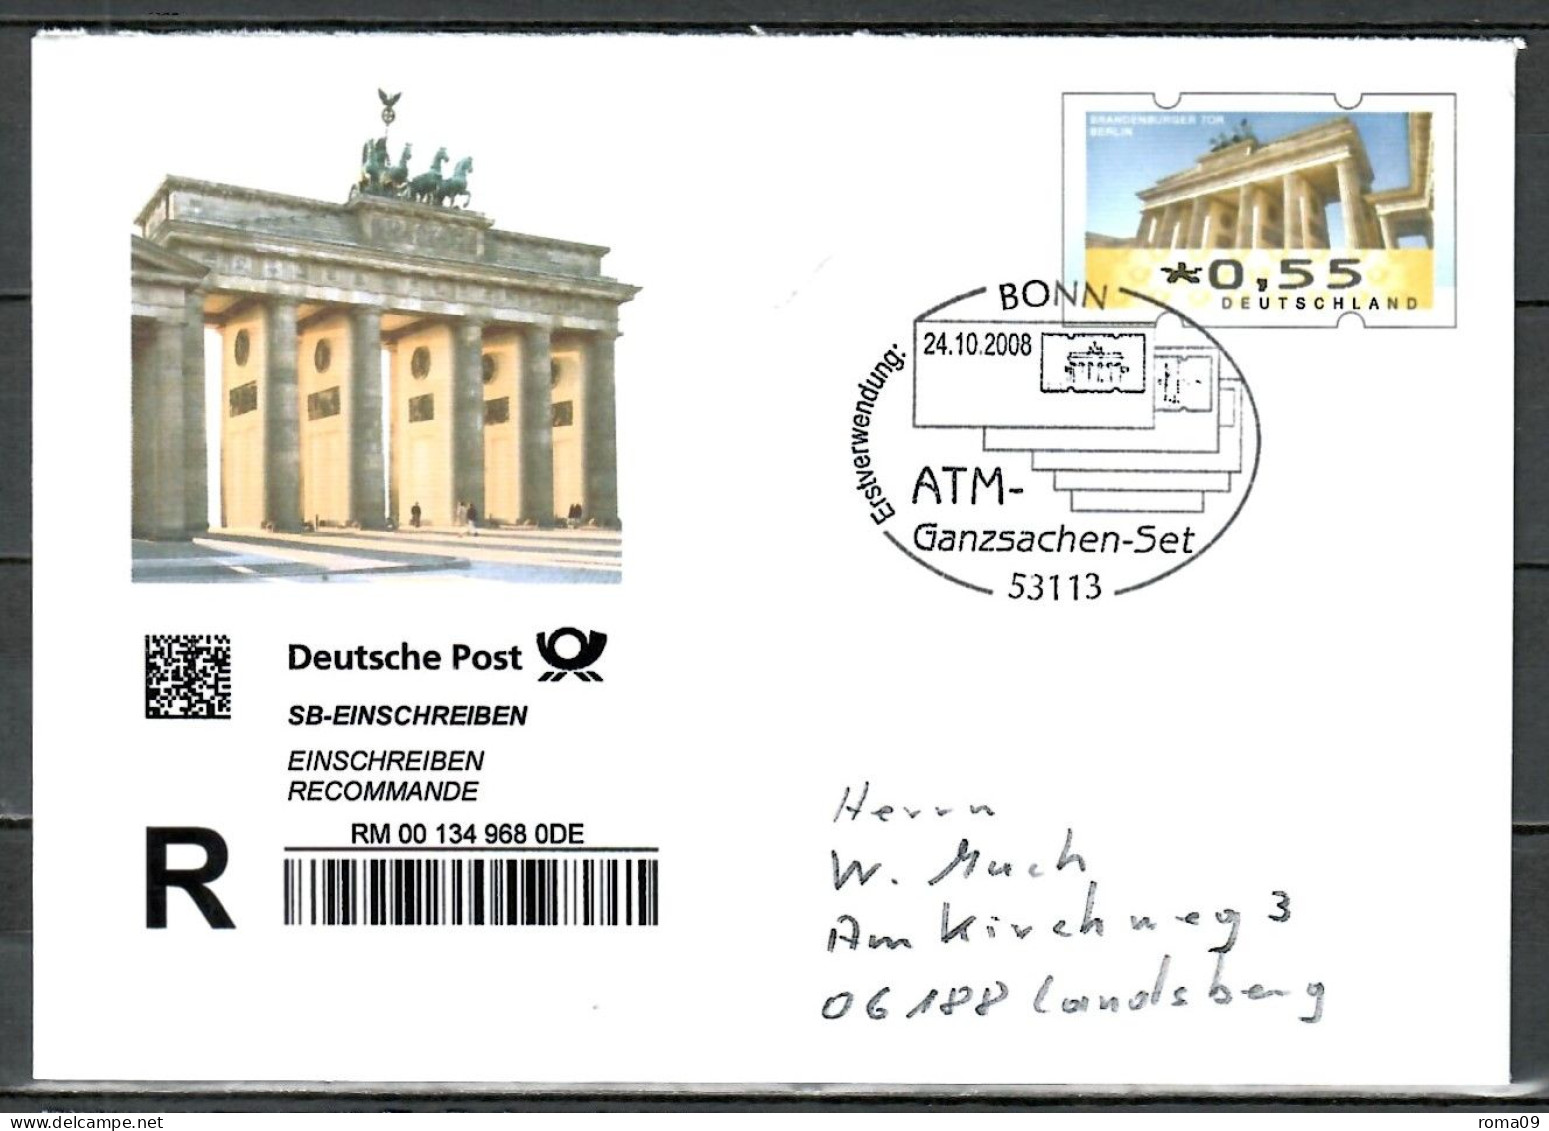 MiNr. USo 169 (ATM - Brandenburger Tor), SoSt. ATM-Ganzsache, Erstverwendung; B-274 - Umschläge - Gebraucht